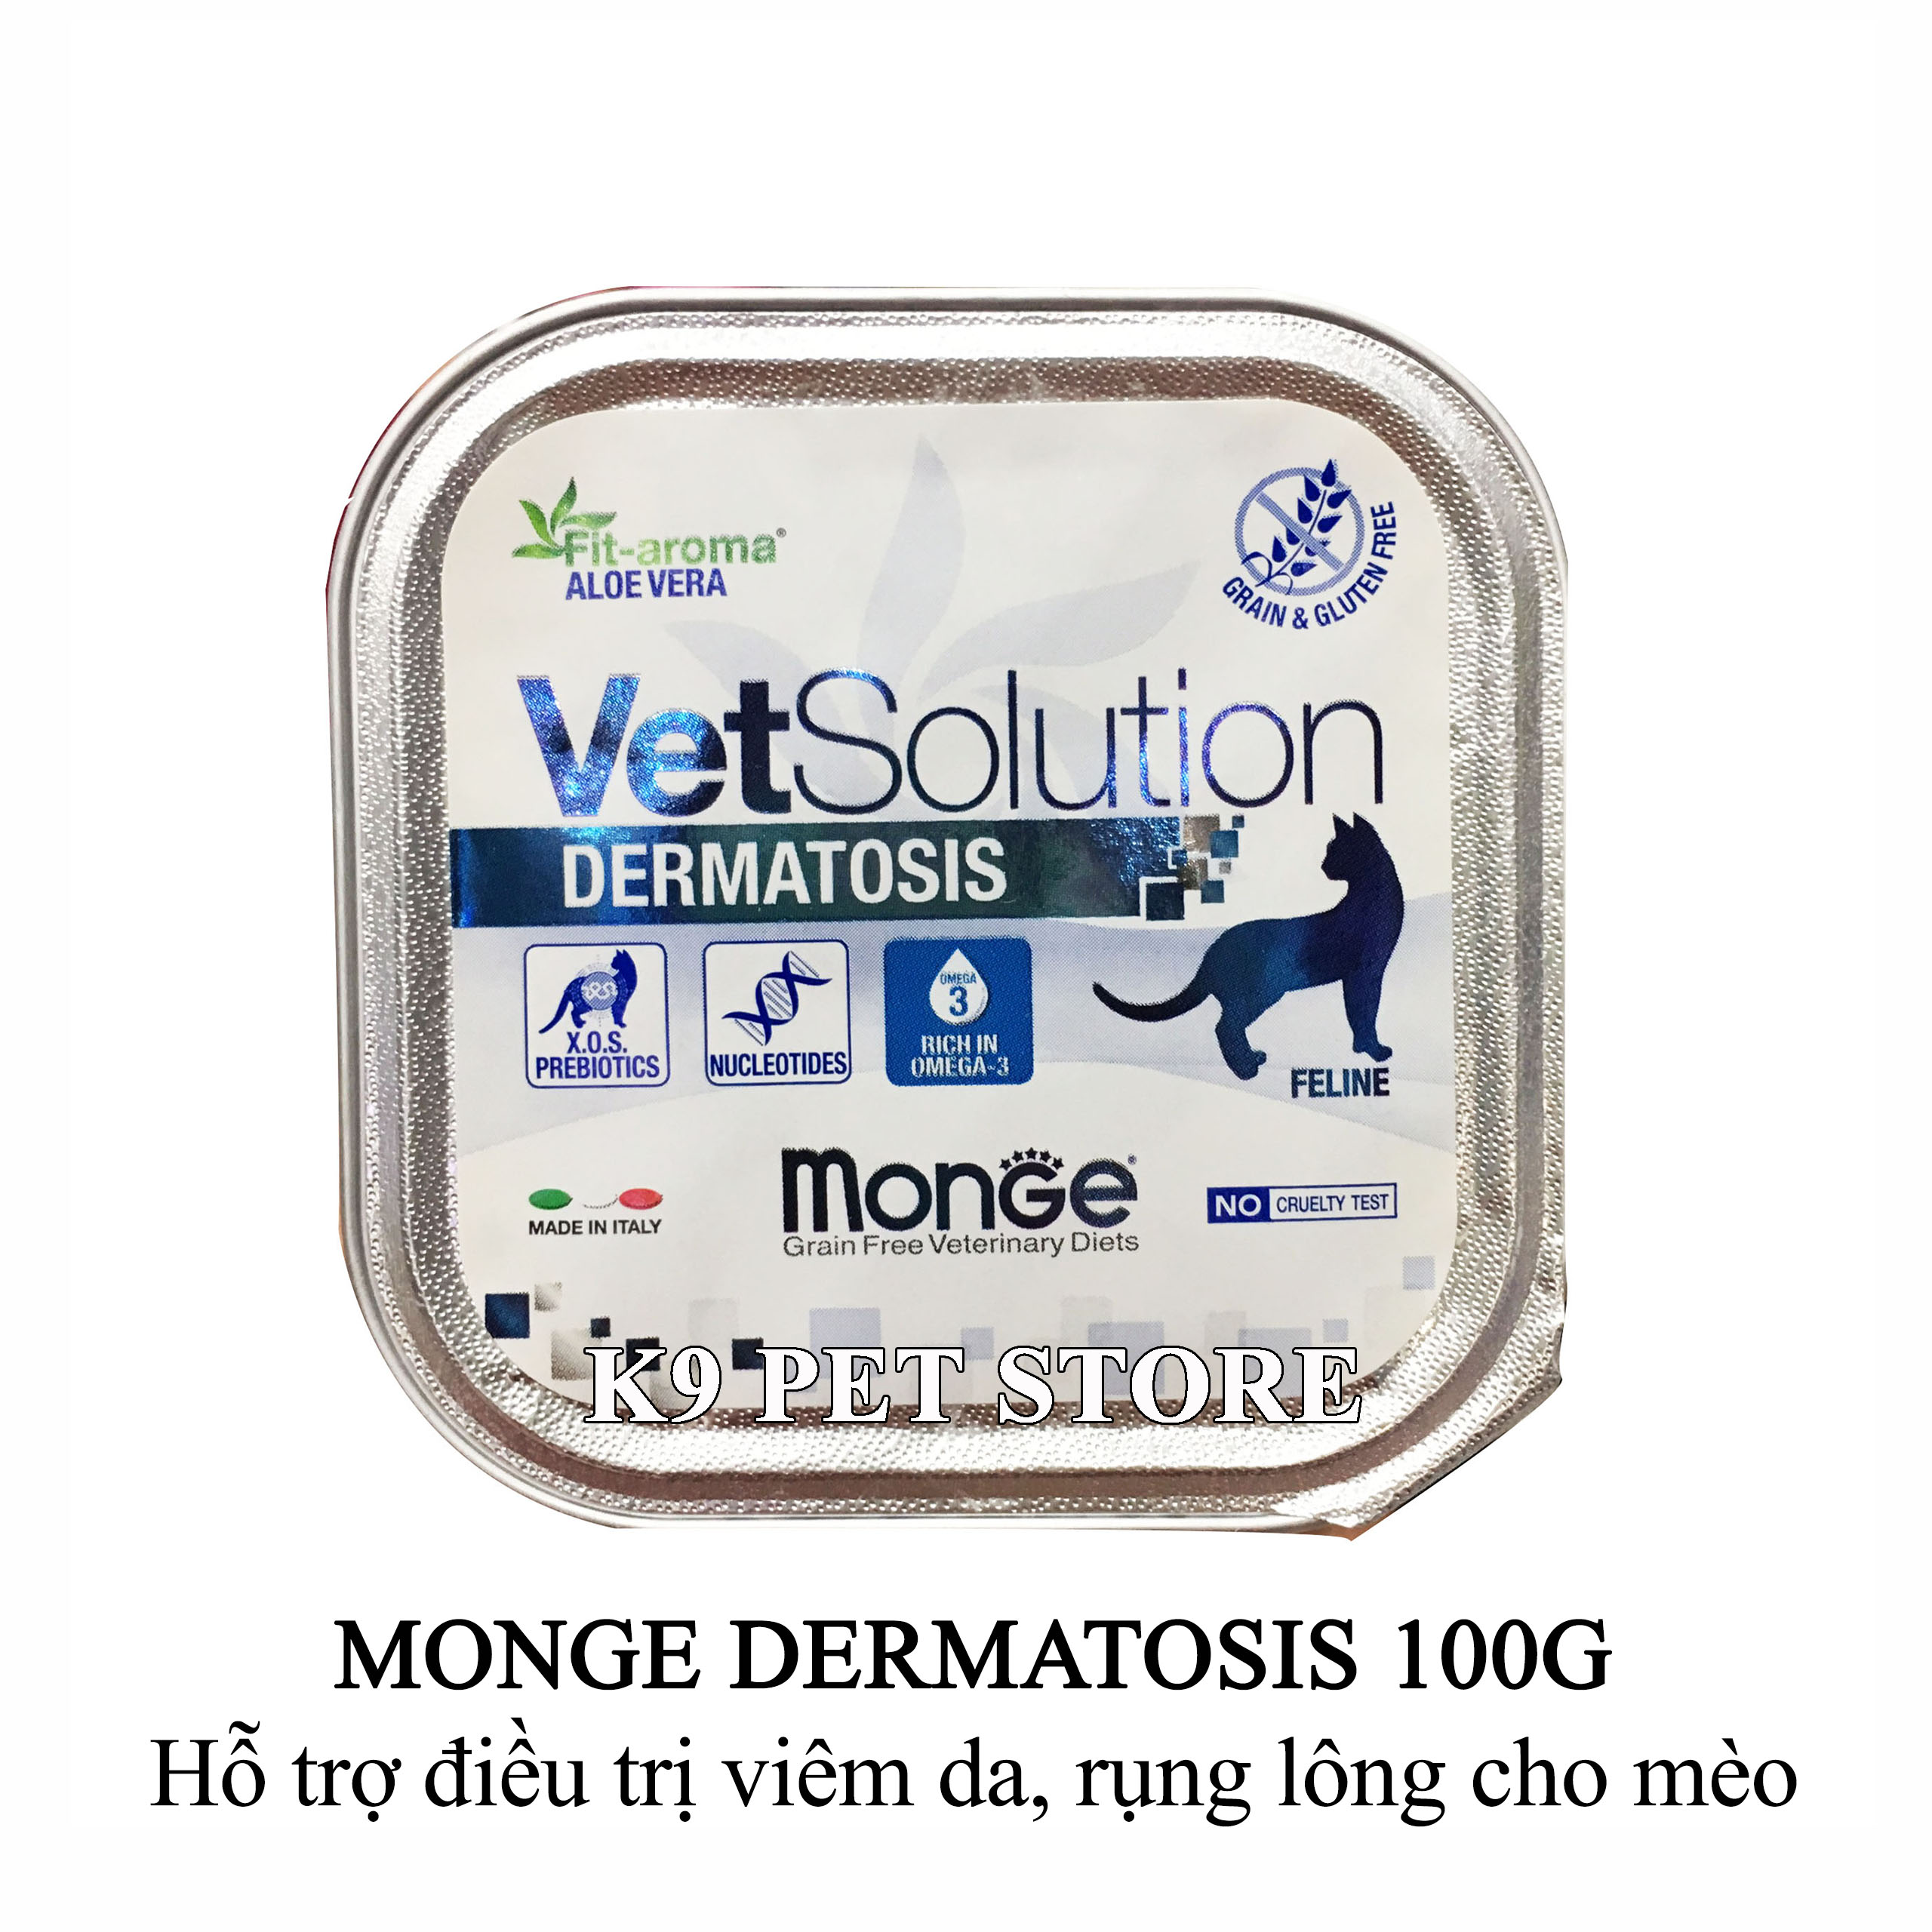 Pate Monge Dermatosis 100g - Hỗ trợ điều trị viêm da, rụng lông cho mèo